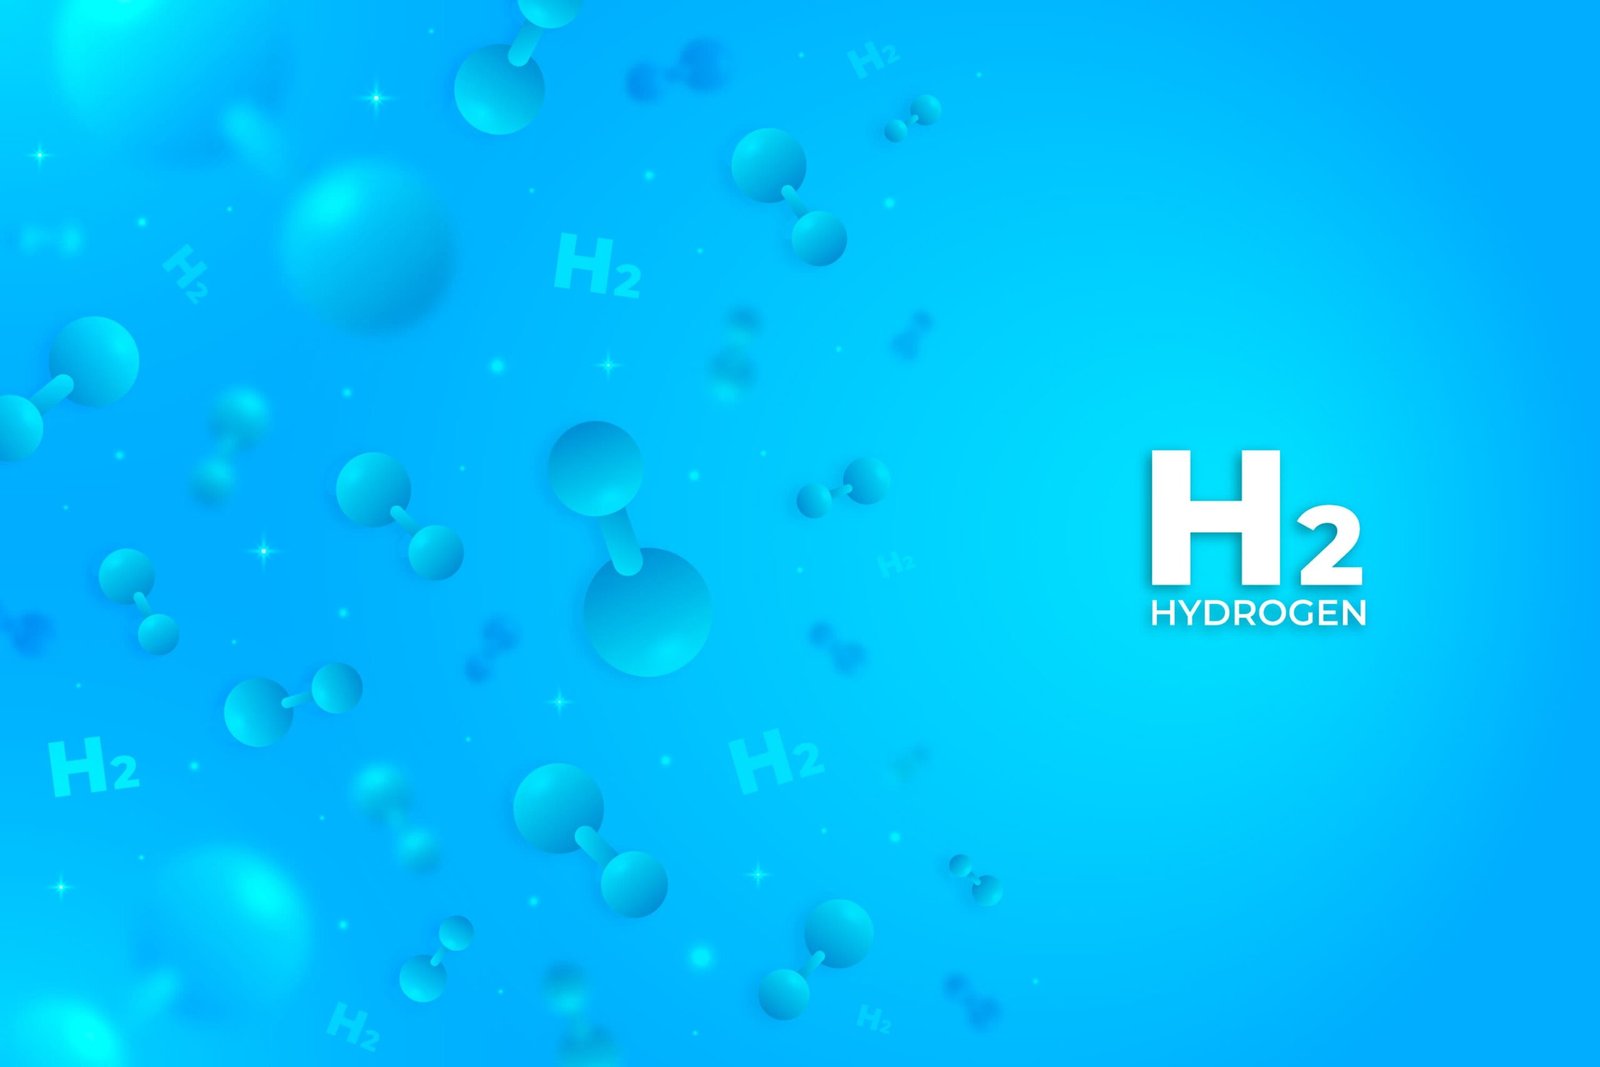 Hydro là sự lựa chọn tuyệt vời và cần thiết để hỗ trợ bảo vệ sức khỏe, sắc đẹp từ sâu bên trong tế bào